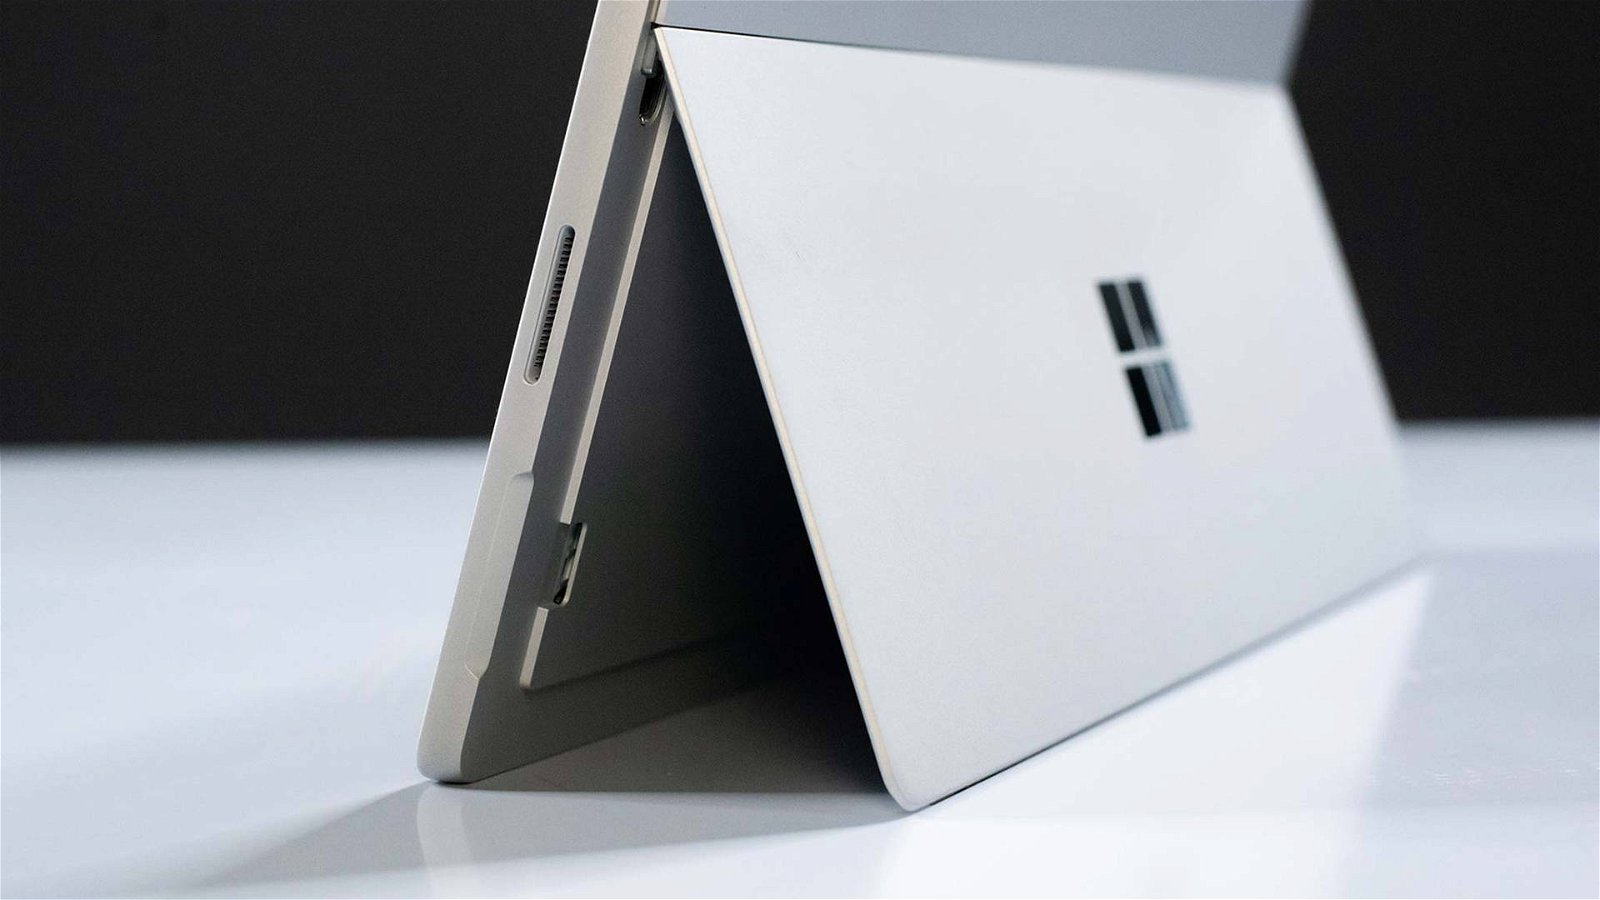 Immagine di Microsoft Store, forte sconto sull'accoppiata Surface Pro 6 e Surface Pen